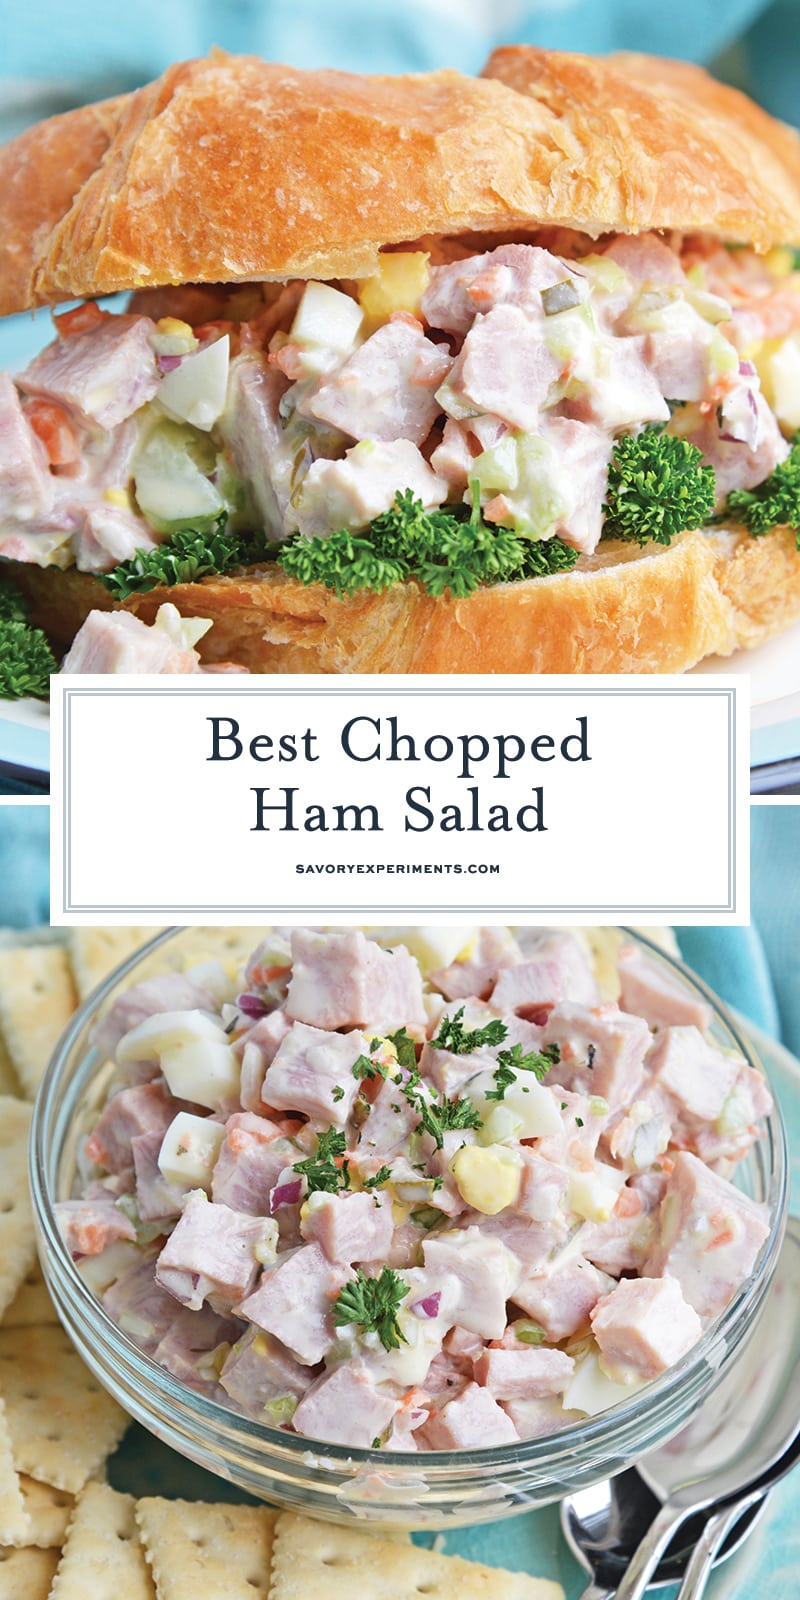 The Best Ham Salad - 5 Star Recipe Using Leftover Ham